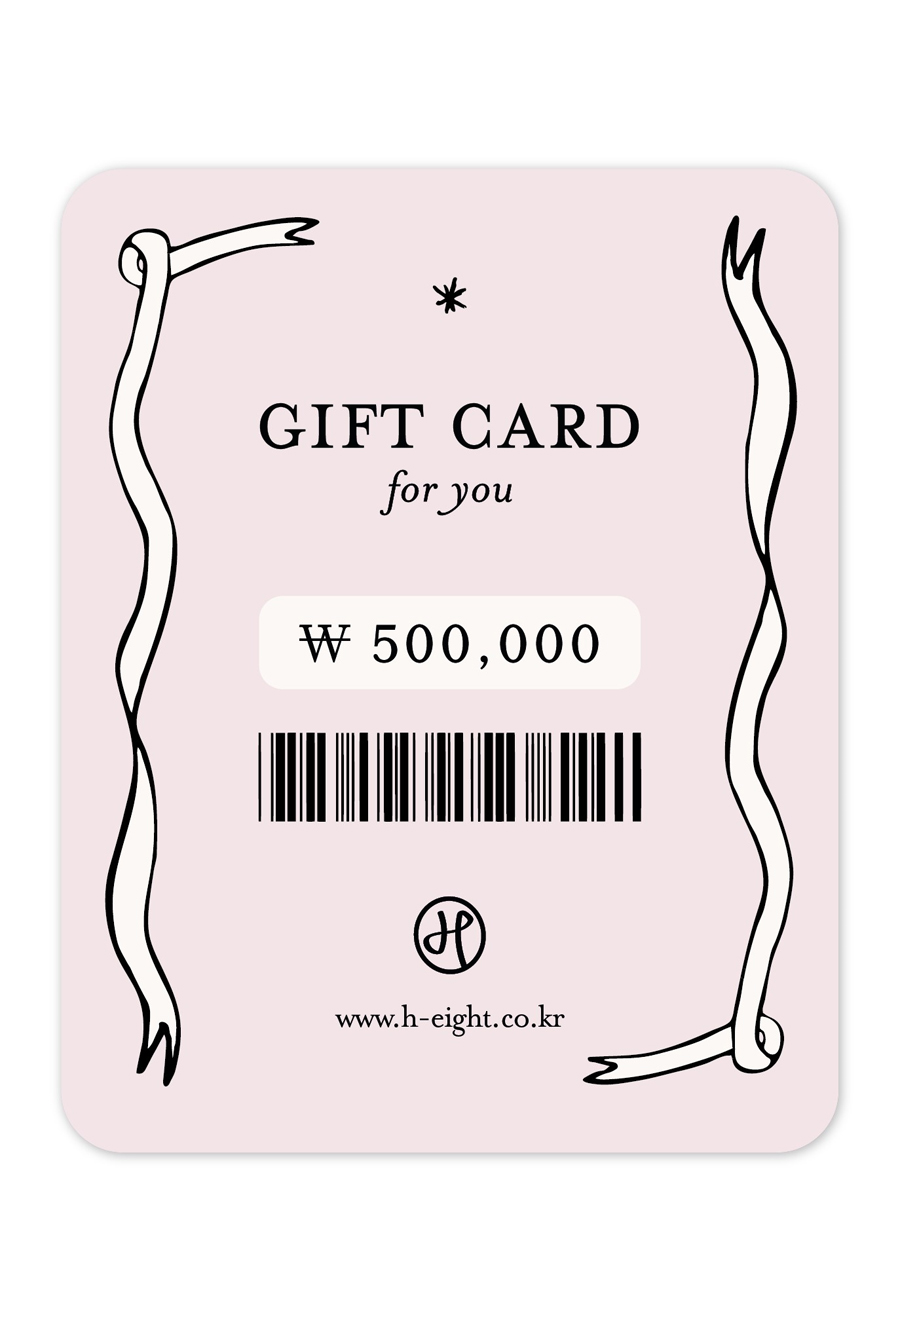 GIFT CARD (지급액 550,000원)